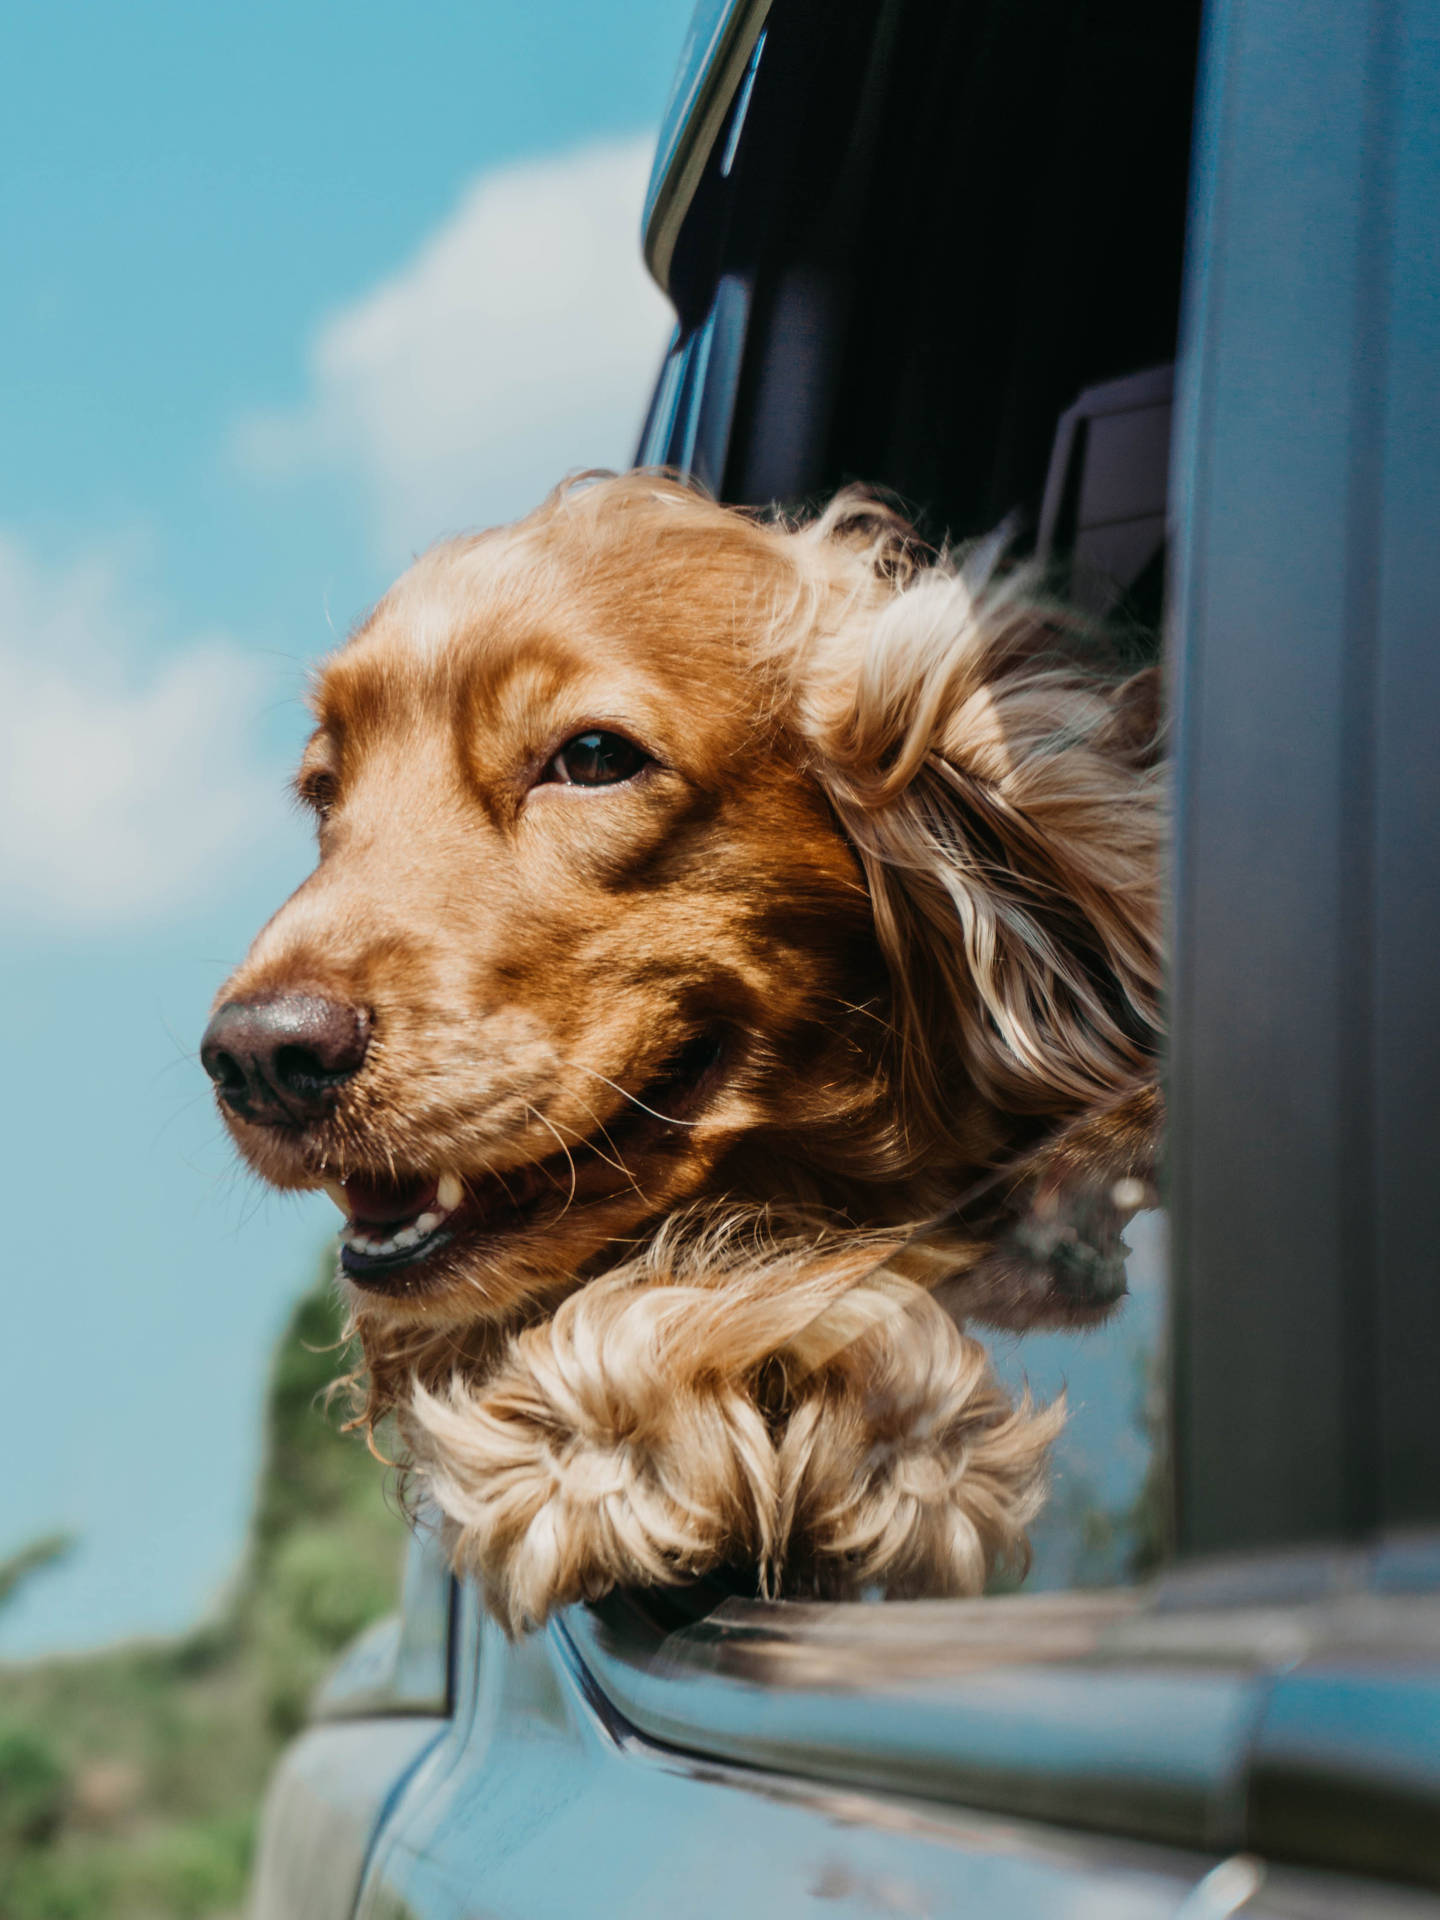 Golden retriever dog looking out car window wallpaper.